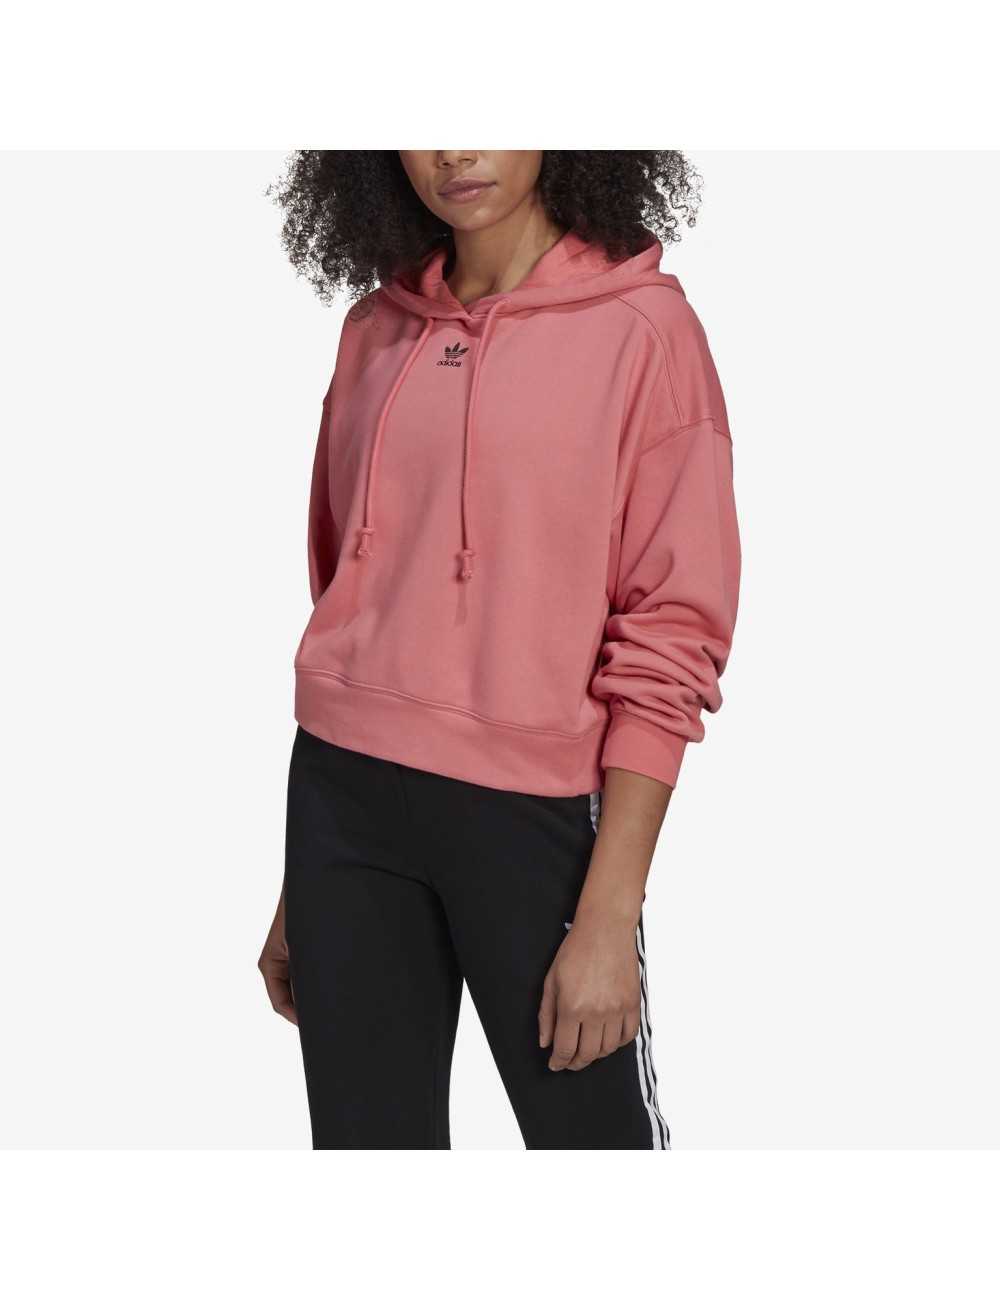 Felpa Adidas originals Essential donna con cappuccio pink - Felpe Donna